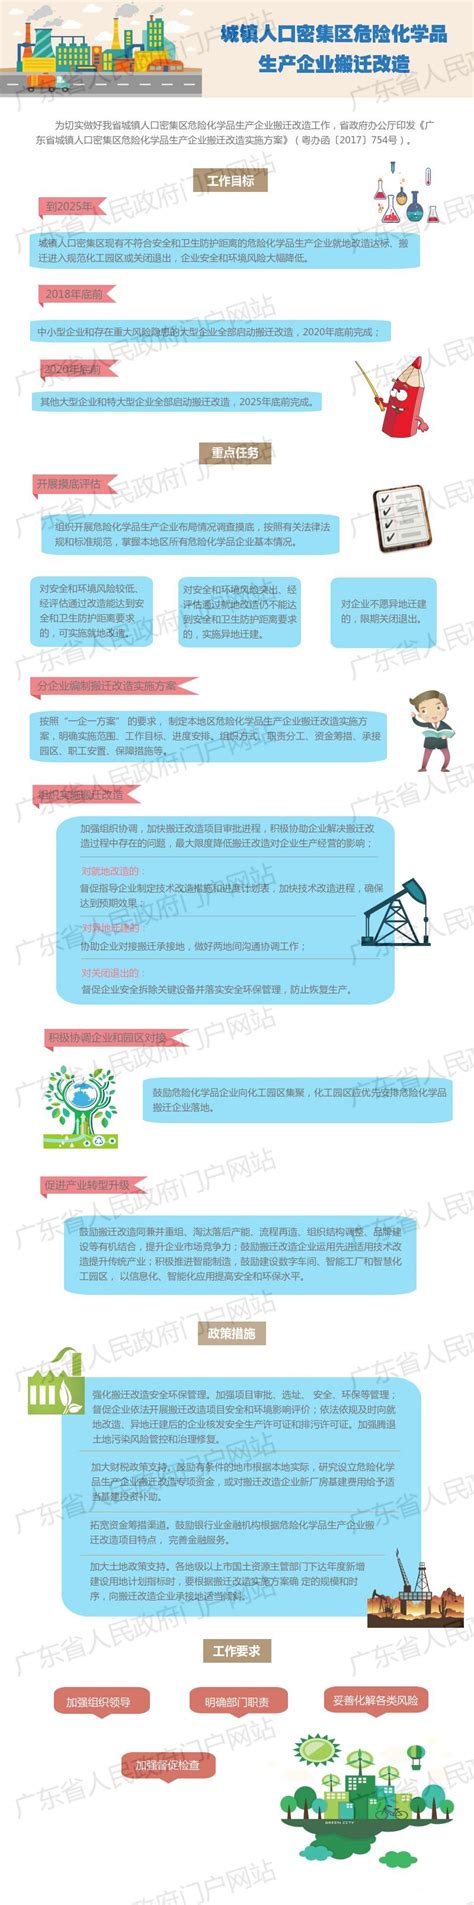 湛江市中小企业公共服务平台政策解读